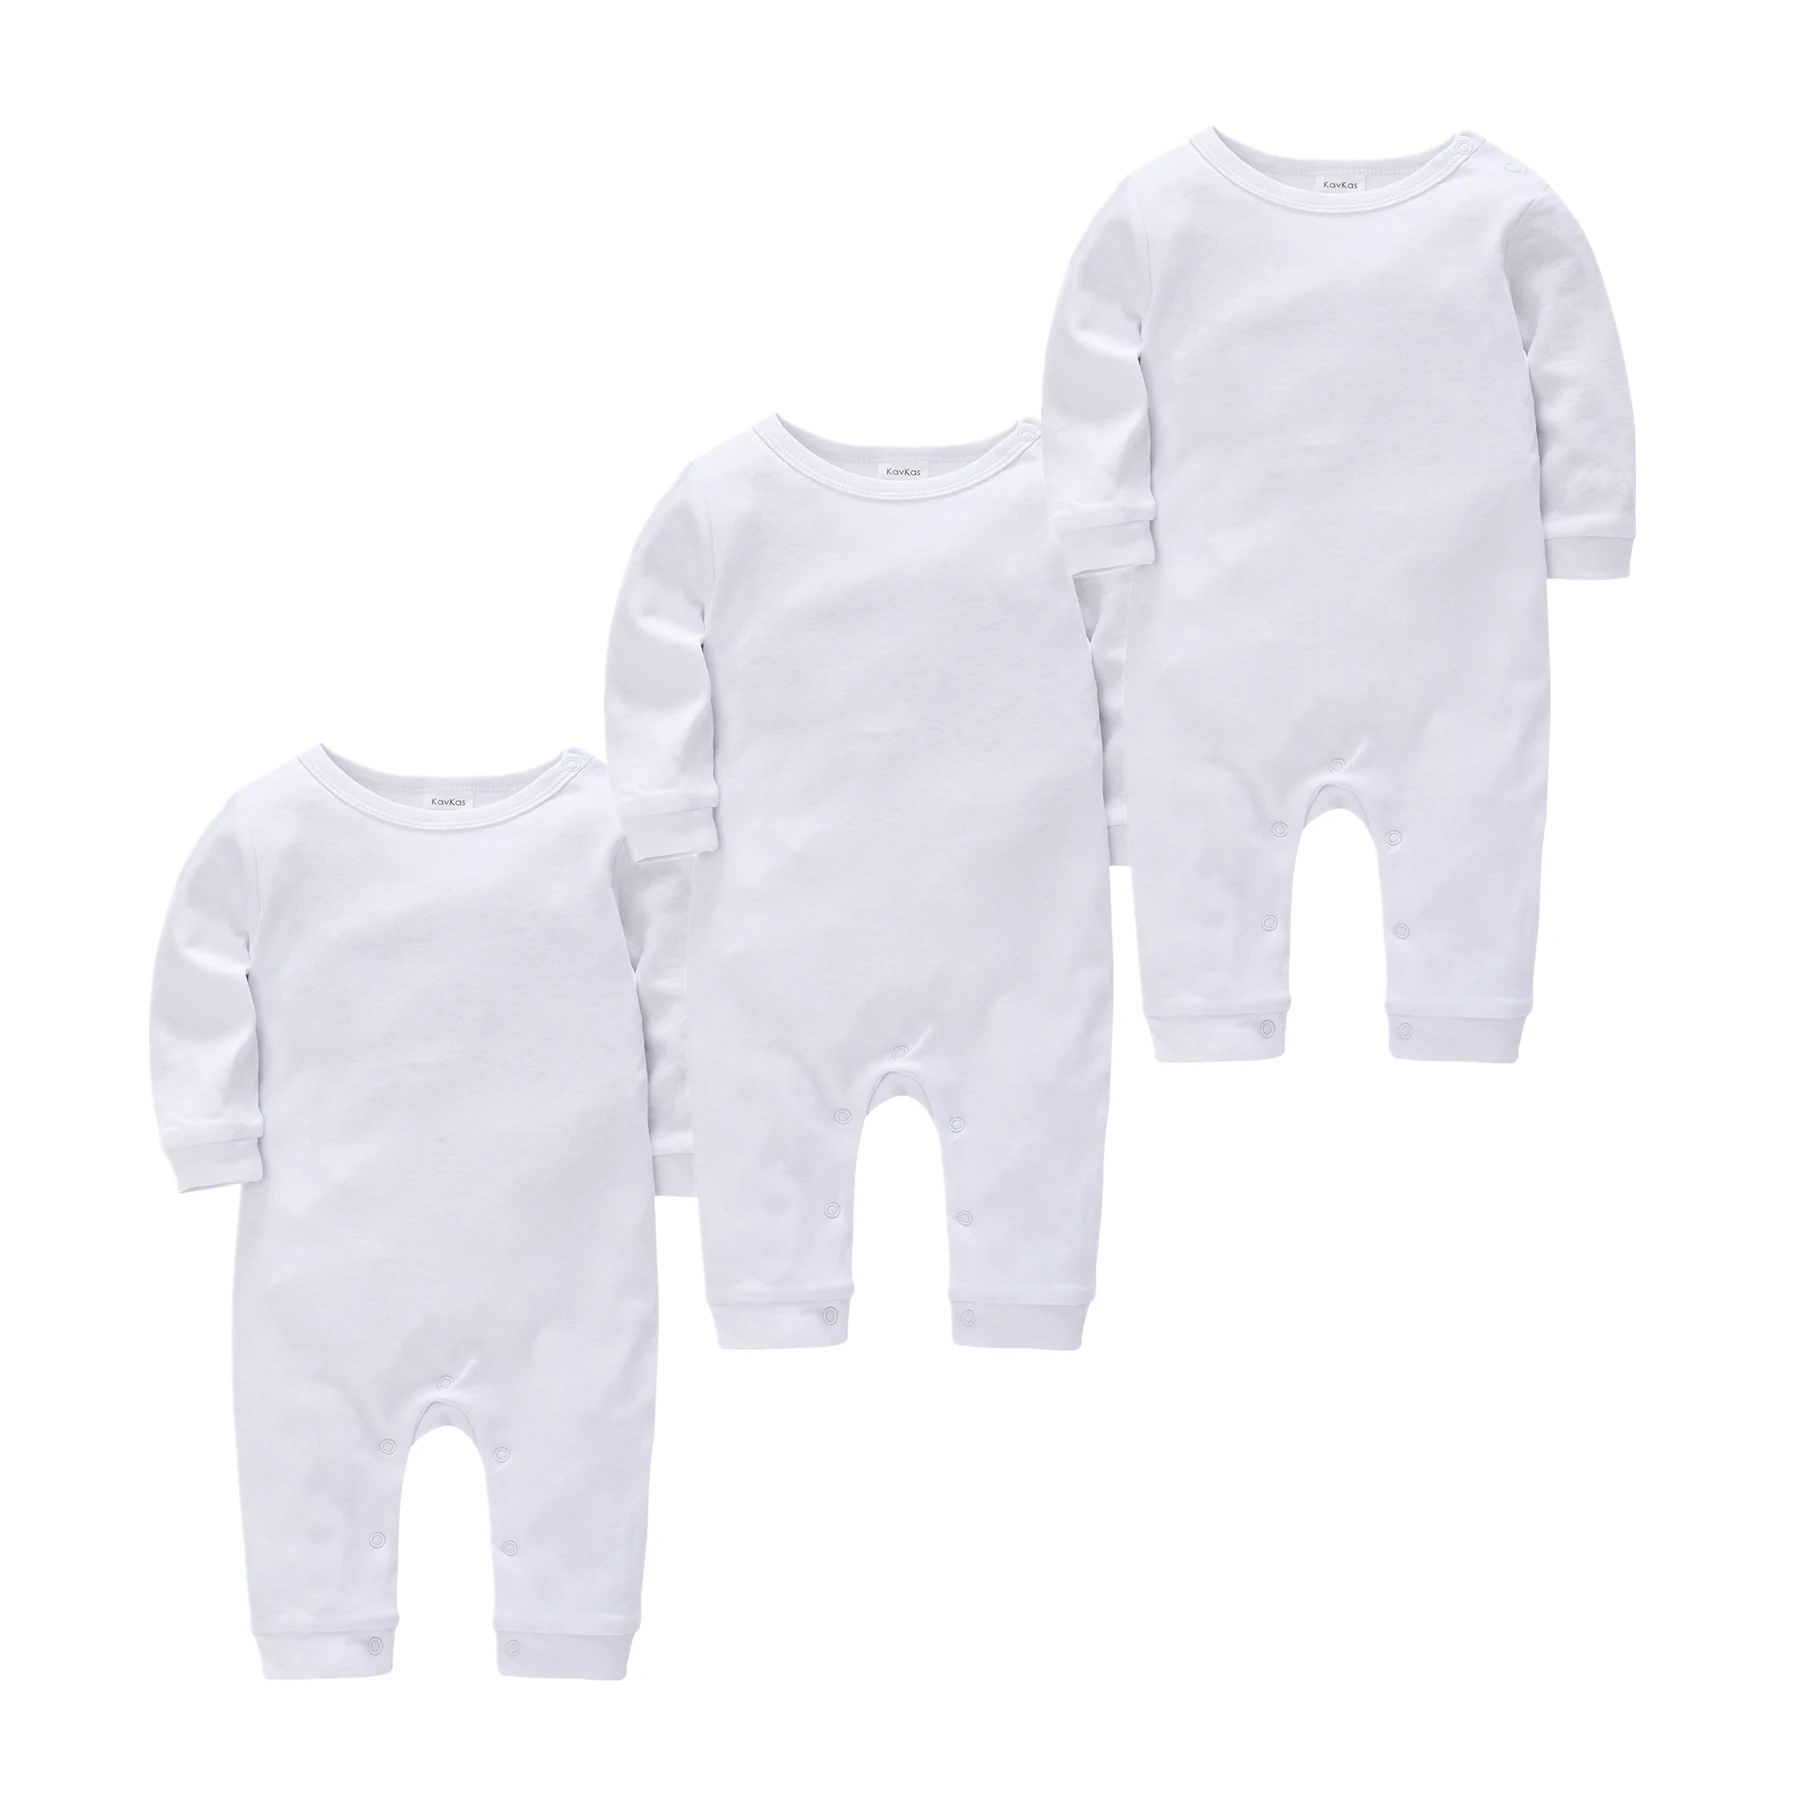 

0-18M Newborn Baby Pijamas Rompers bebe fille Cotton Jumpsuit Onesies roupa bebe de Newborn Sleepers Baby Boys Pjiamas